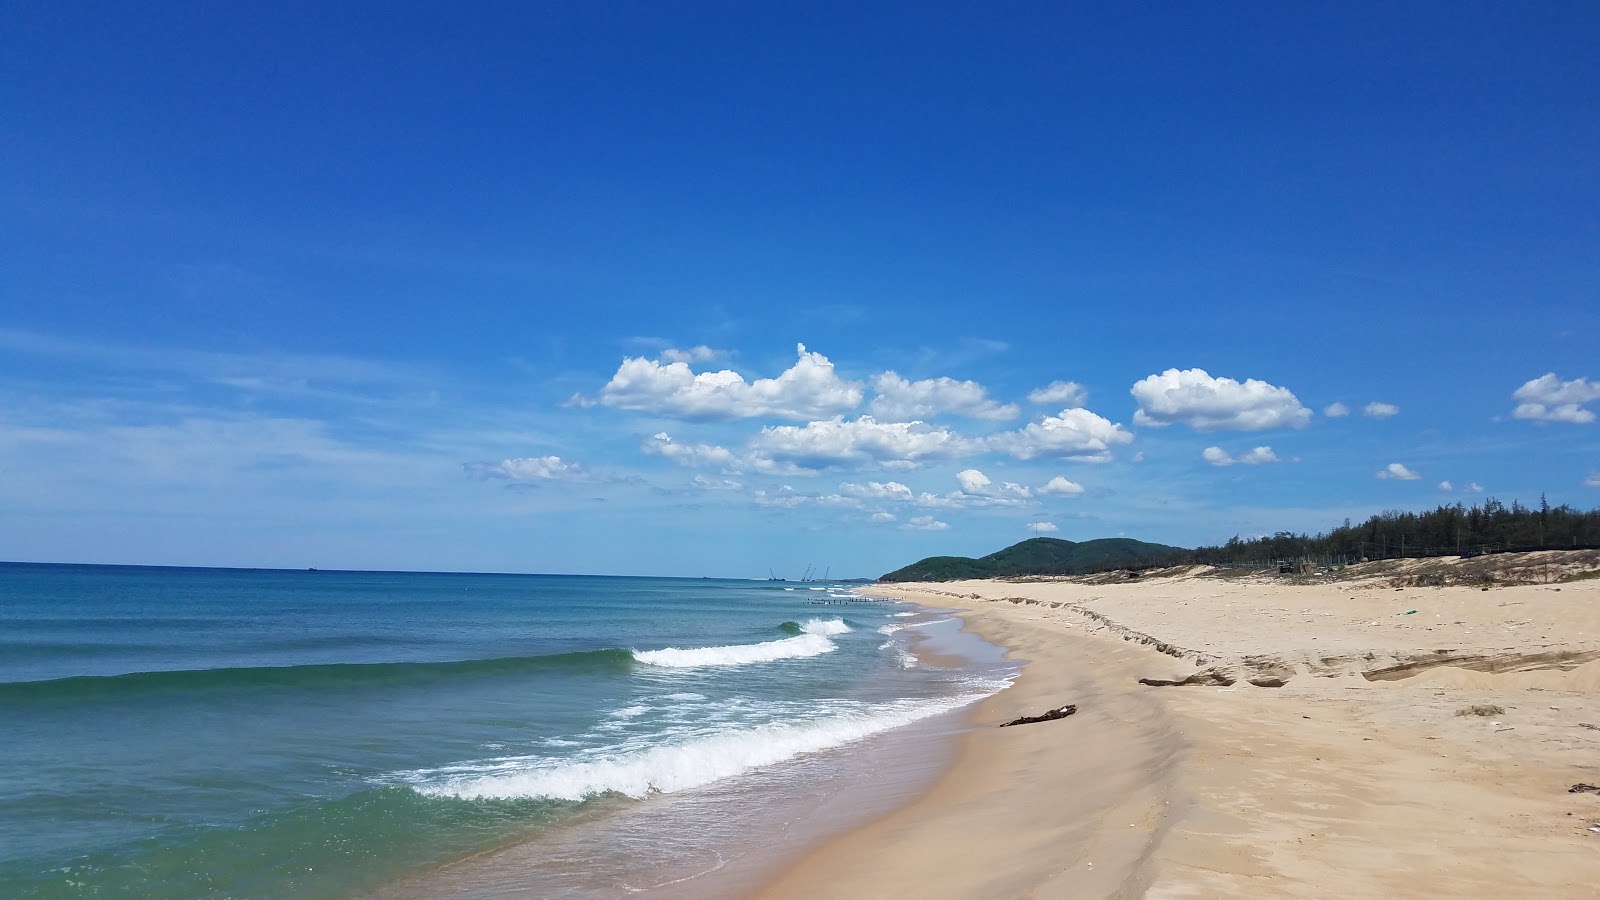 Pho Quang Beach'in fotoğrafı parlak kum yüzey ile